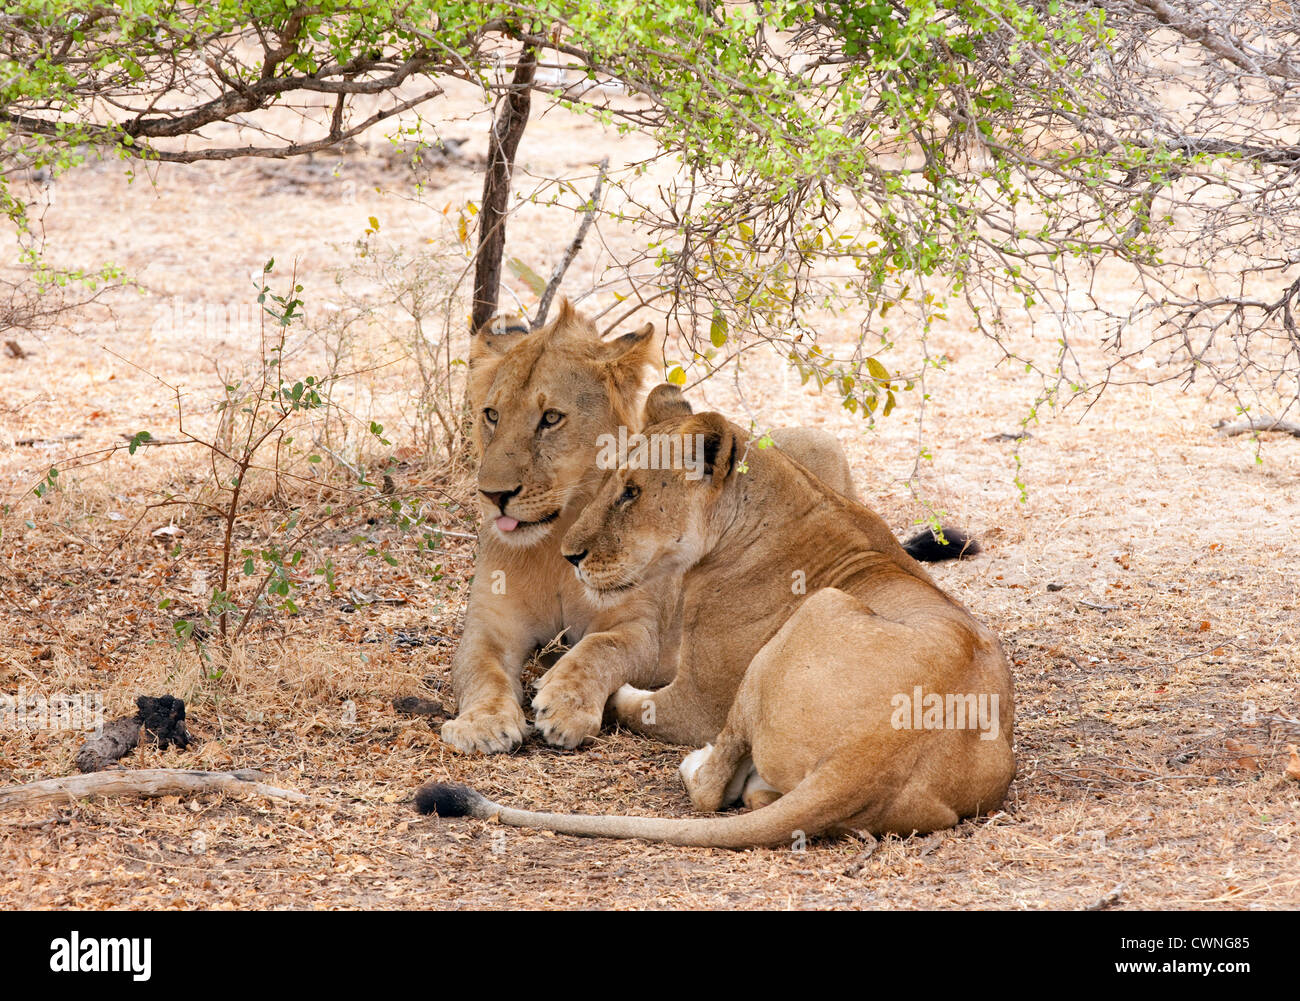 Une femelle adulte lion (Panthera leo) et son adolescent cub se reposant dans la réserve de gibier de Selous, Tanzanie Afrique Banque D'Images